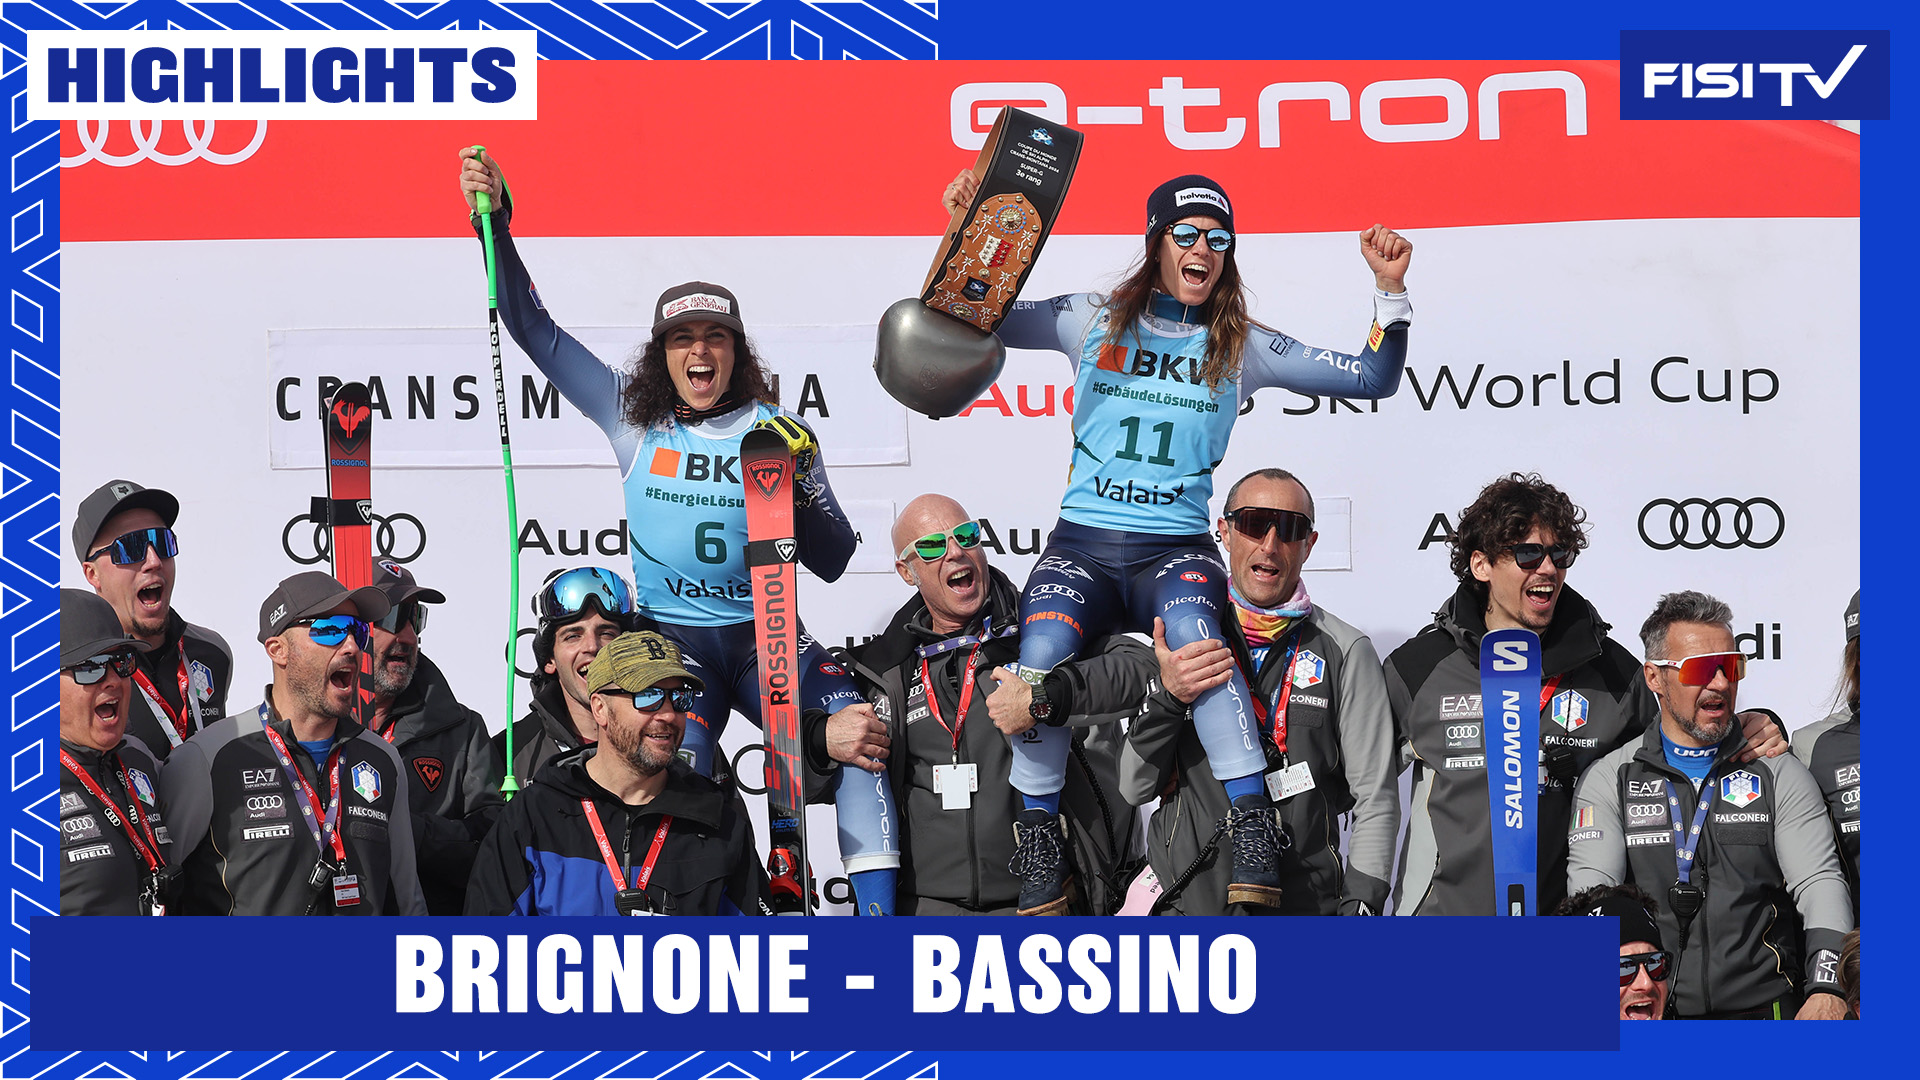 Brignone e Bassino ancora sul podio a Crans Montana | FISI TV